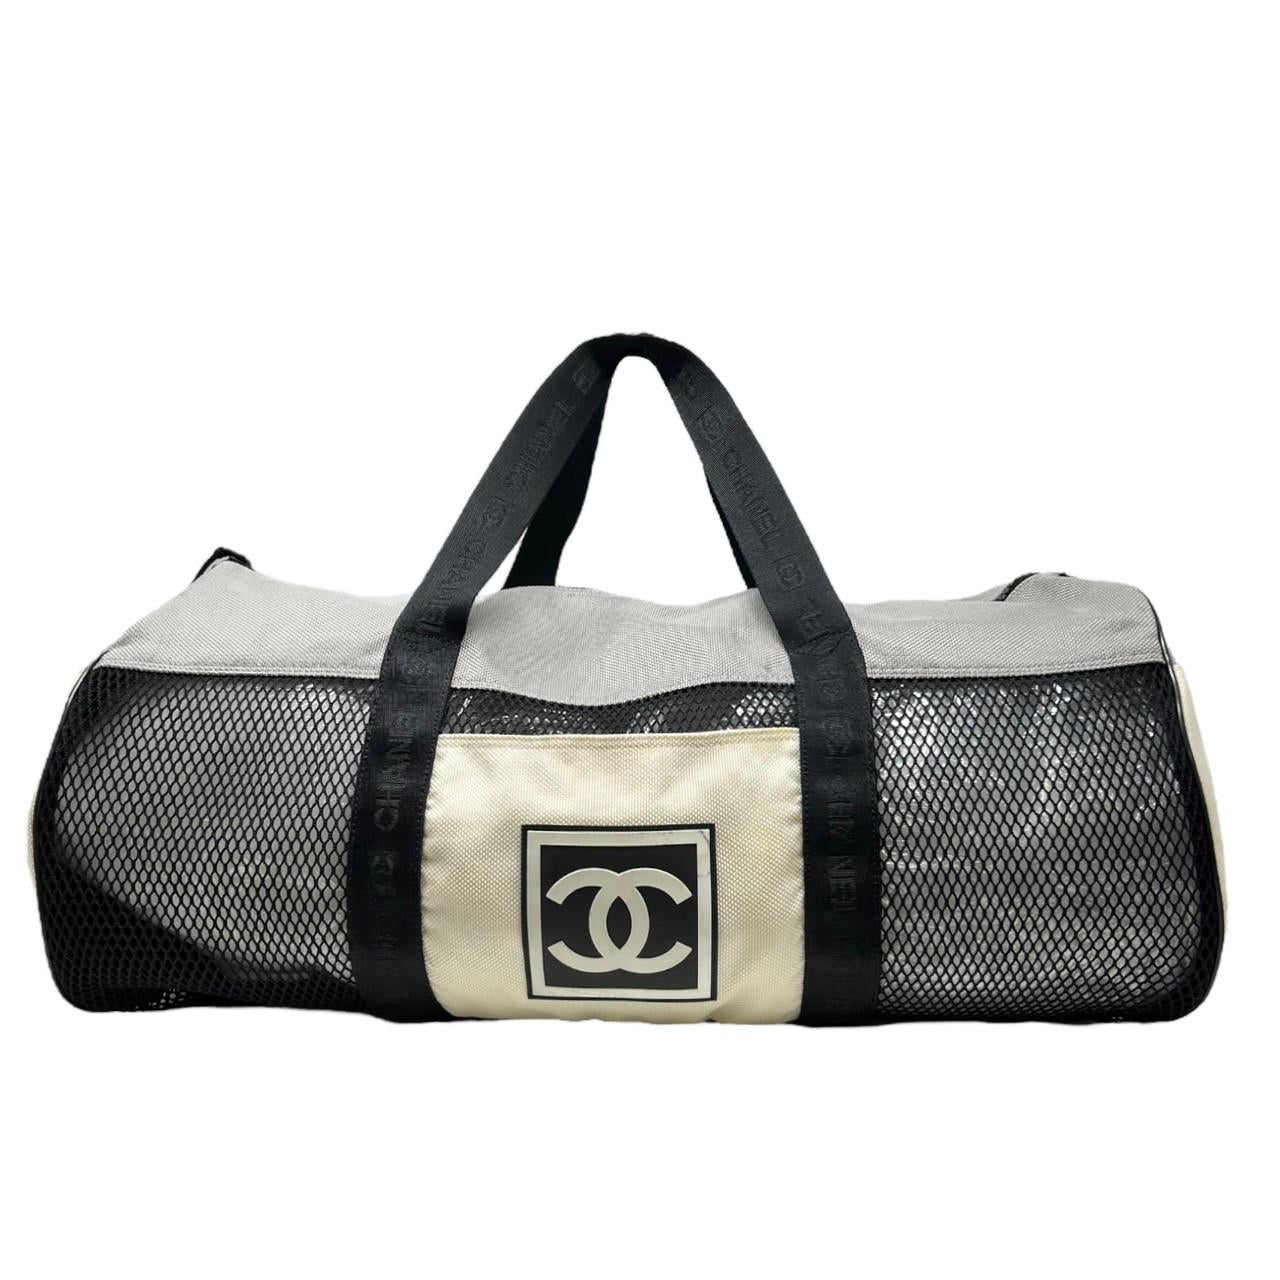 Chanel duffel bag 